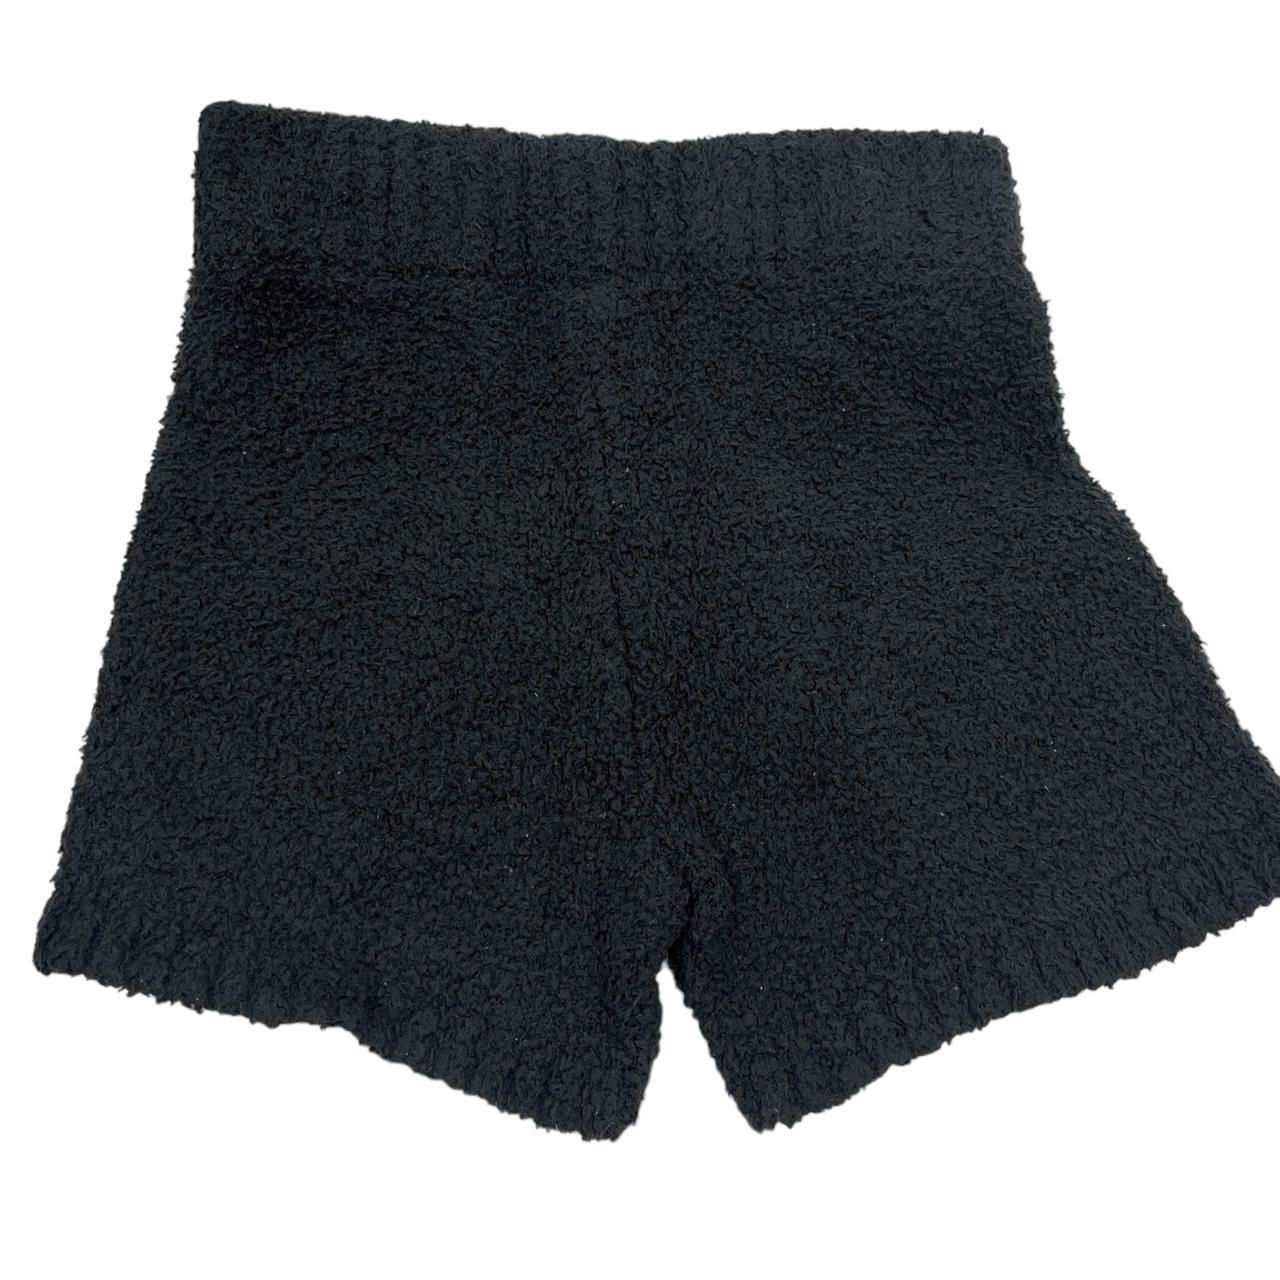 SKIMS Cozy Knit Shorts Size S/M Black #skims - Depop